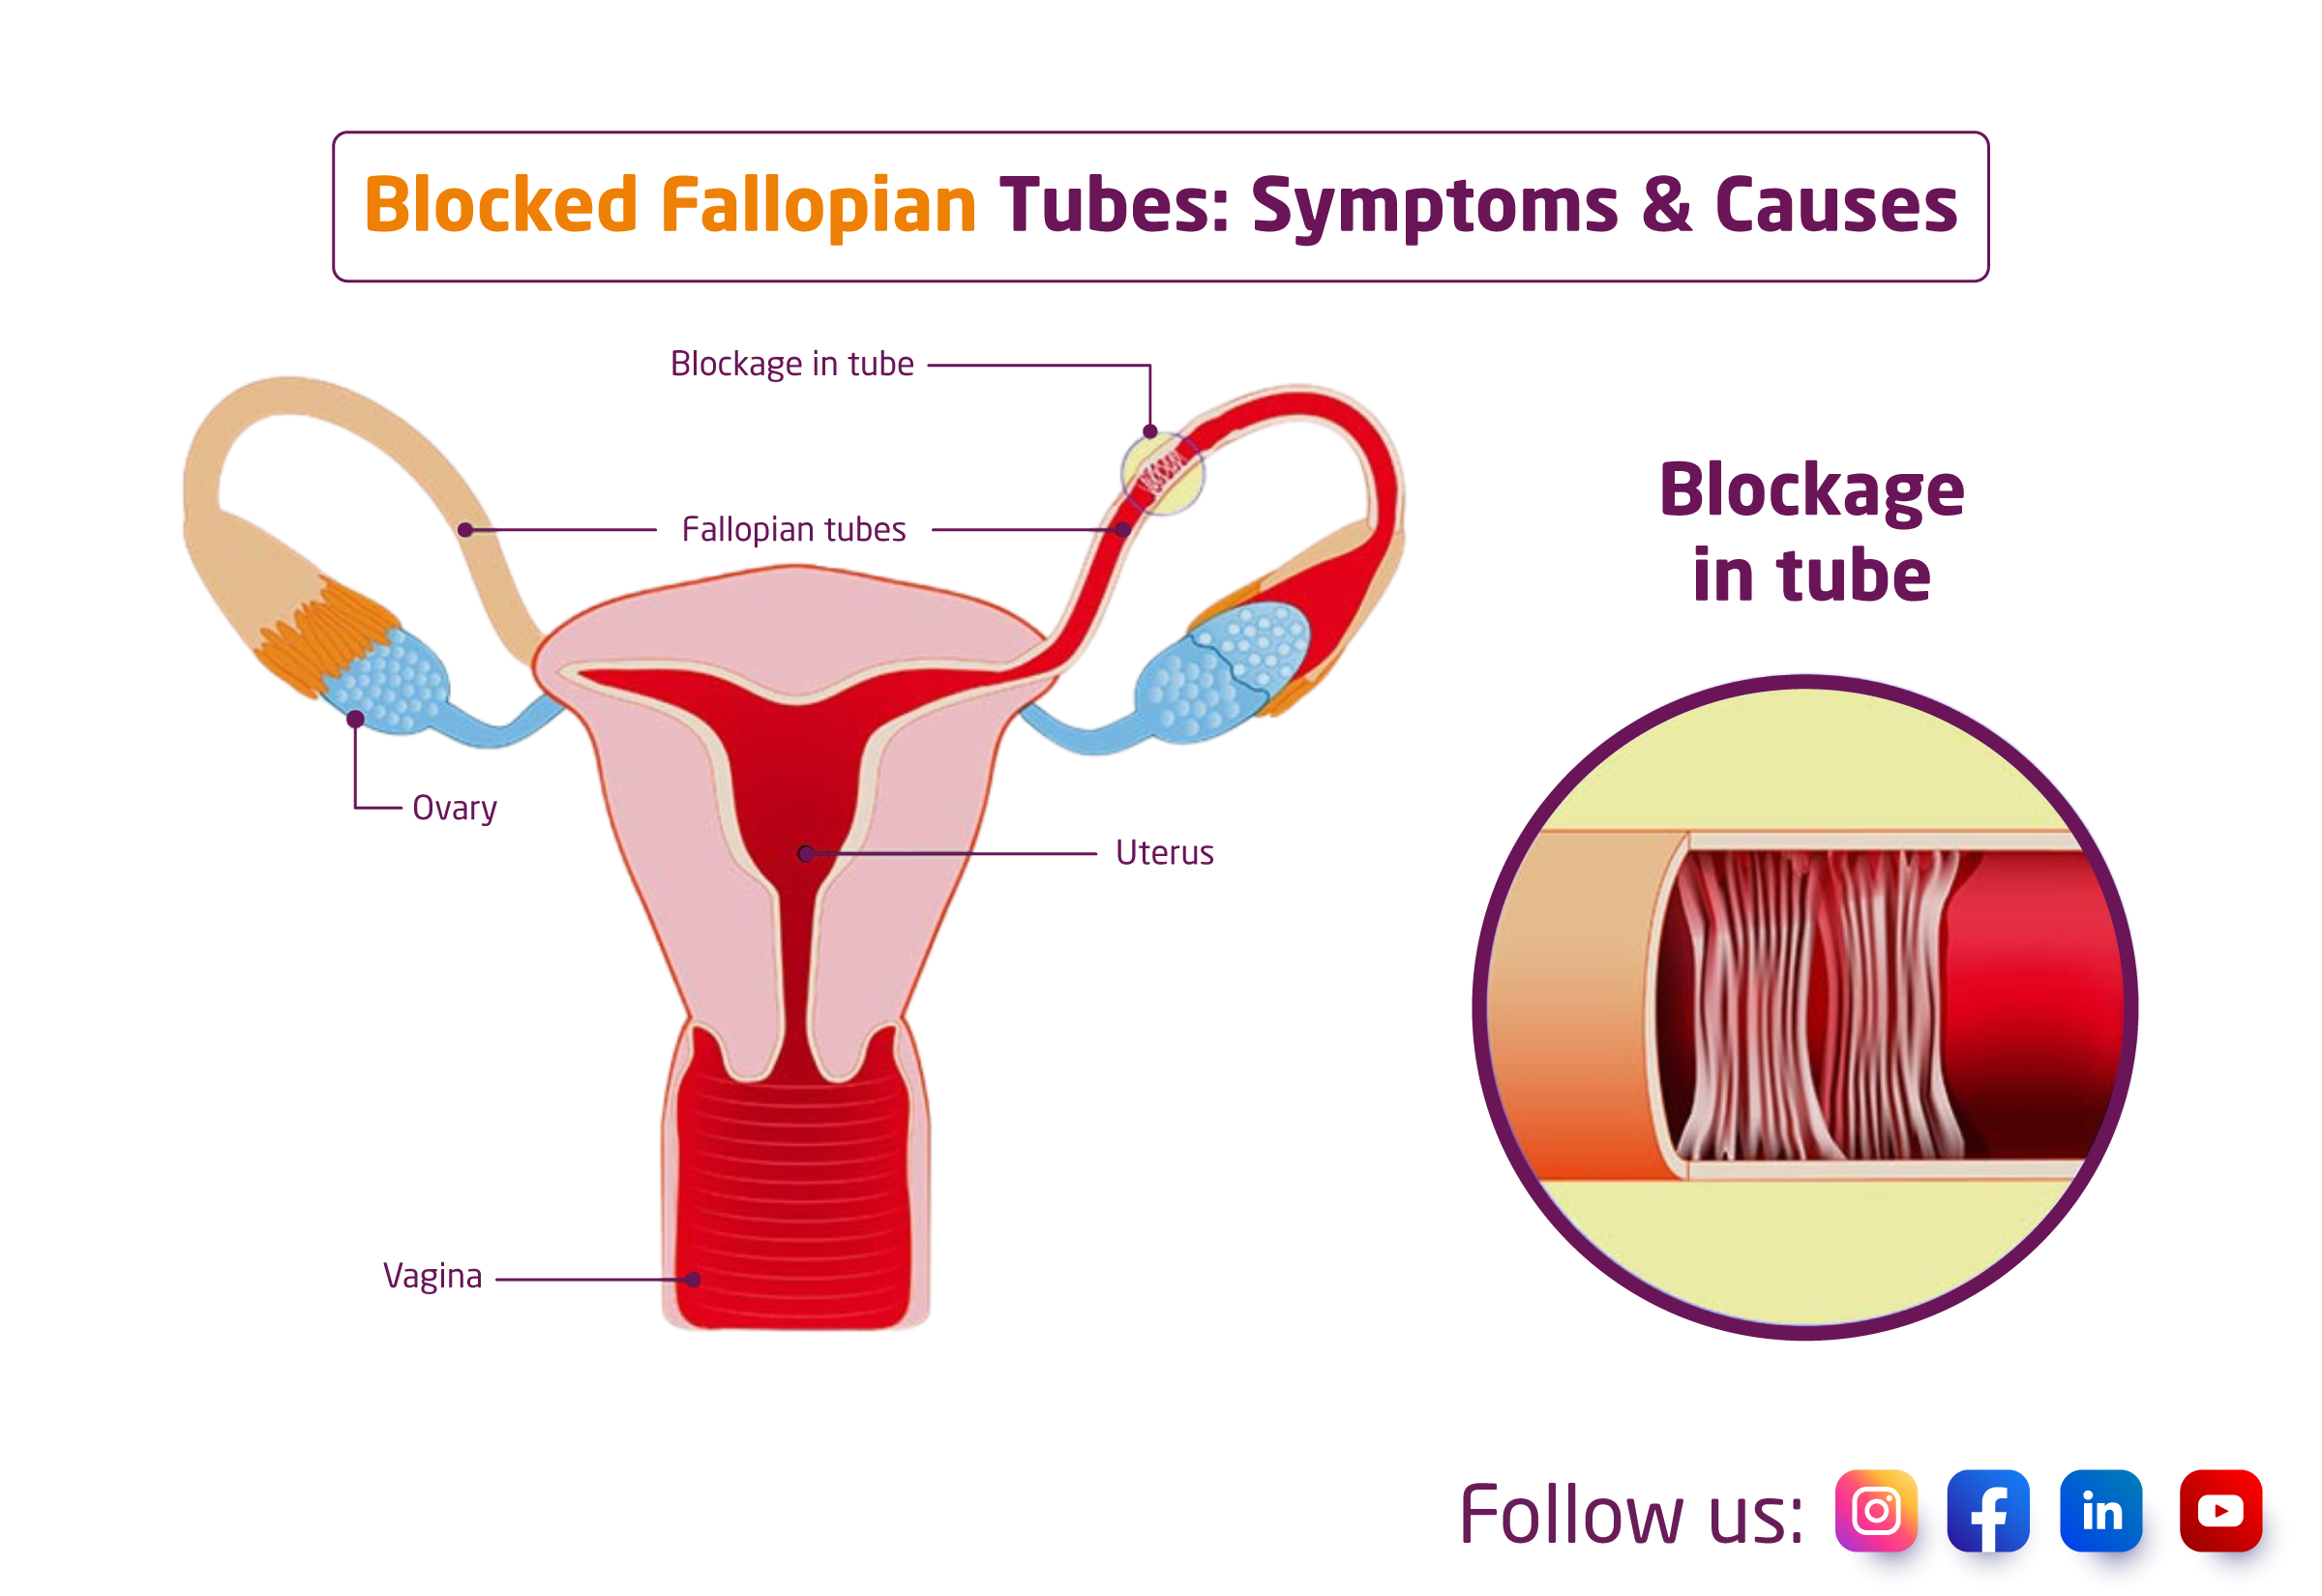 Hydrosalpinx (Blocked Fallopian Tube)